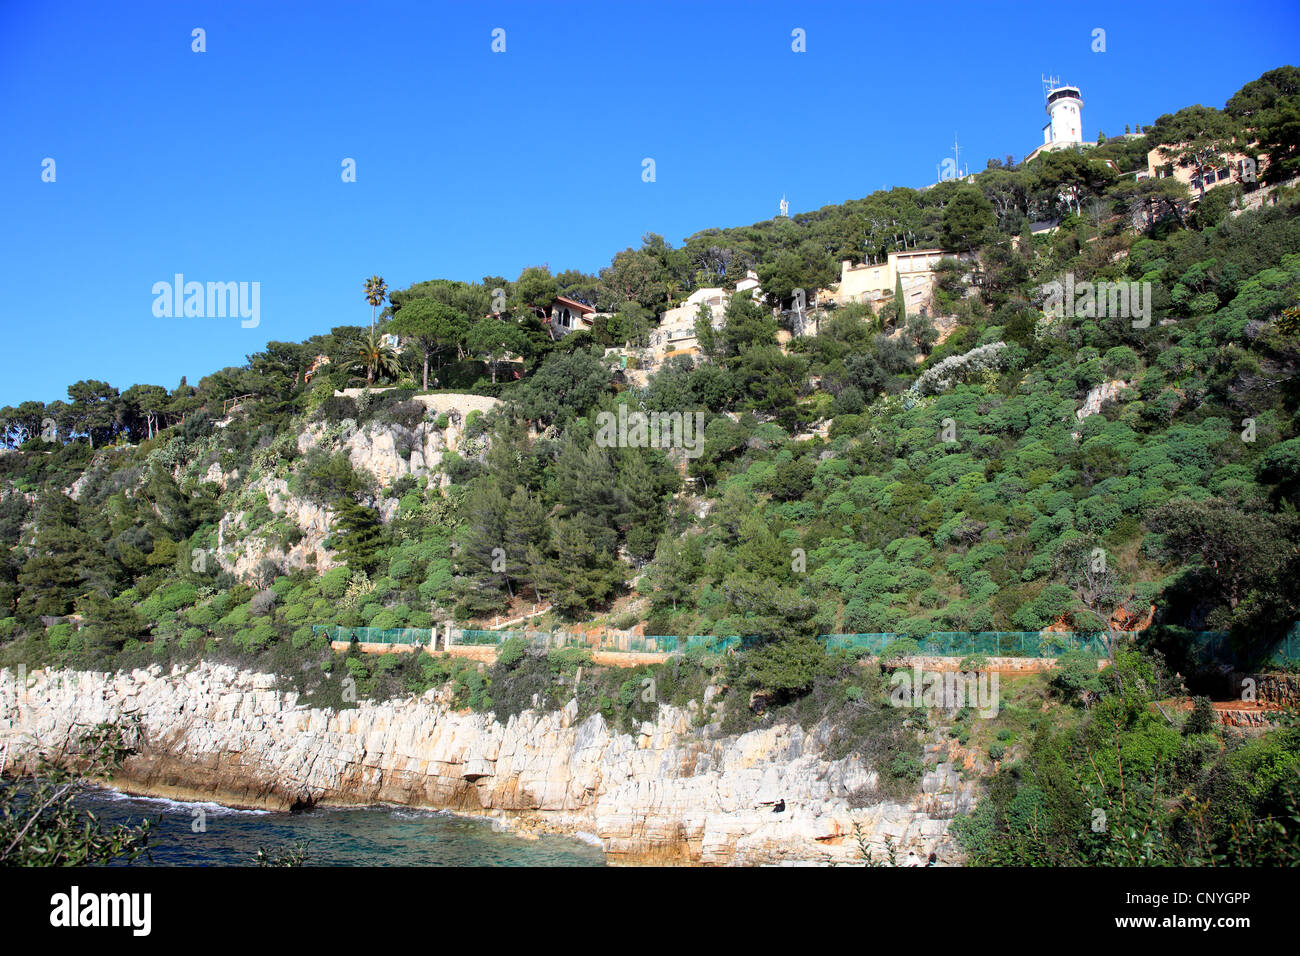 Sentier naturel le long du Cap Ferrat avec végétation méditerranéenne Banque D'Images